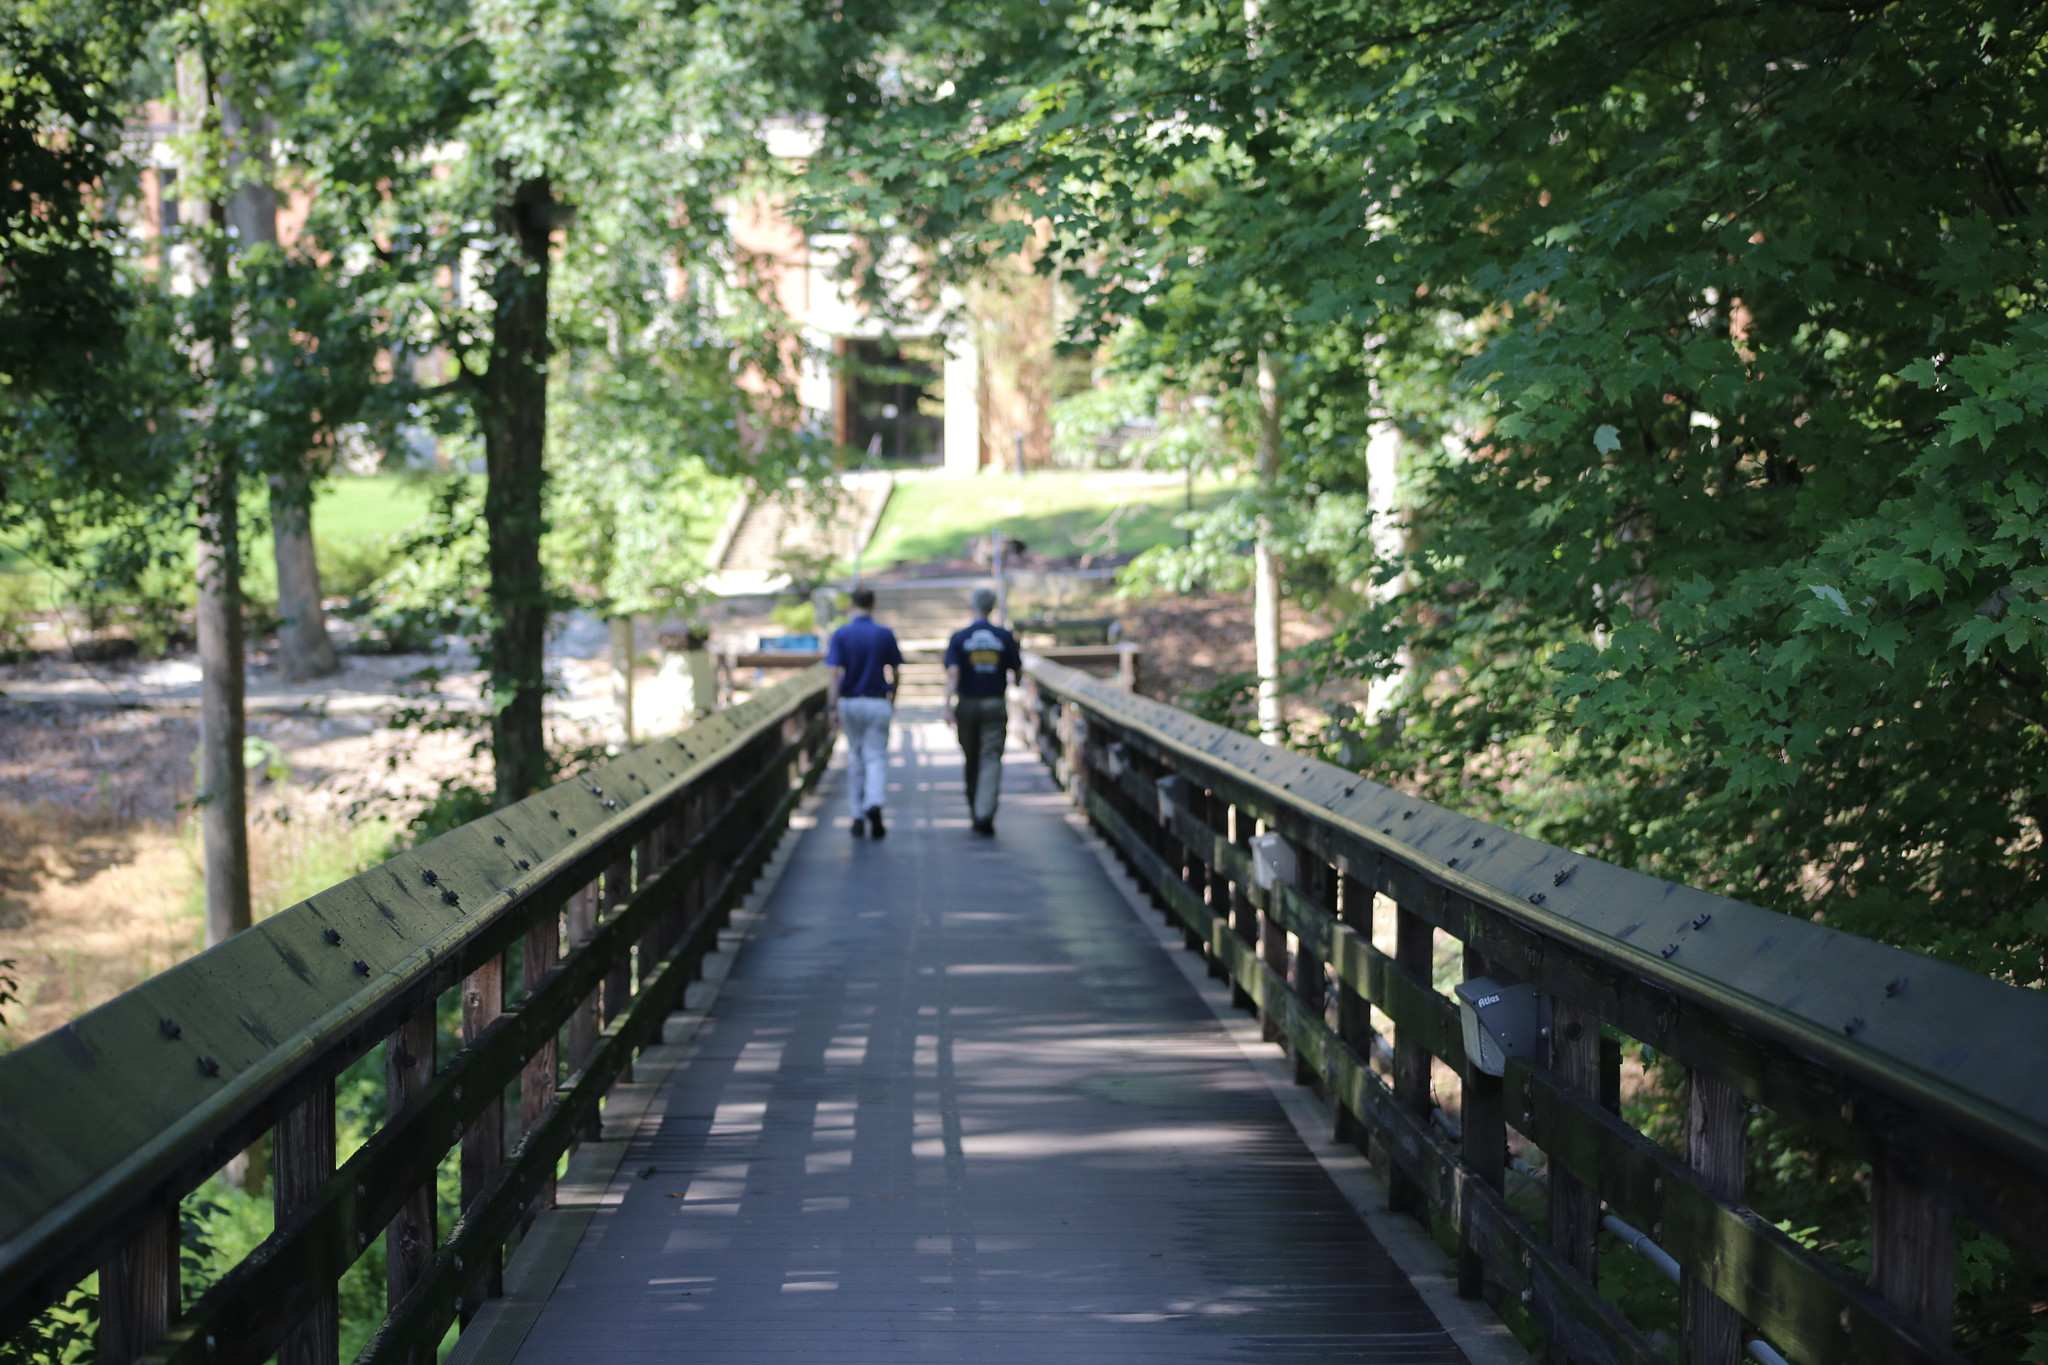 Two people walking across a bridge